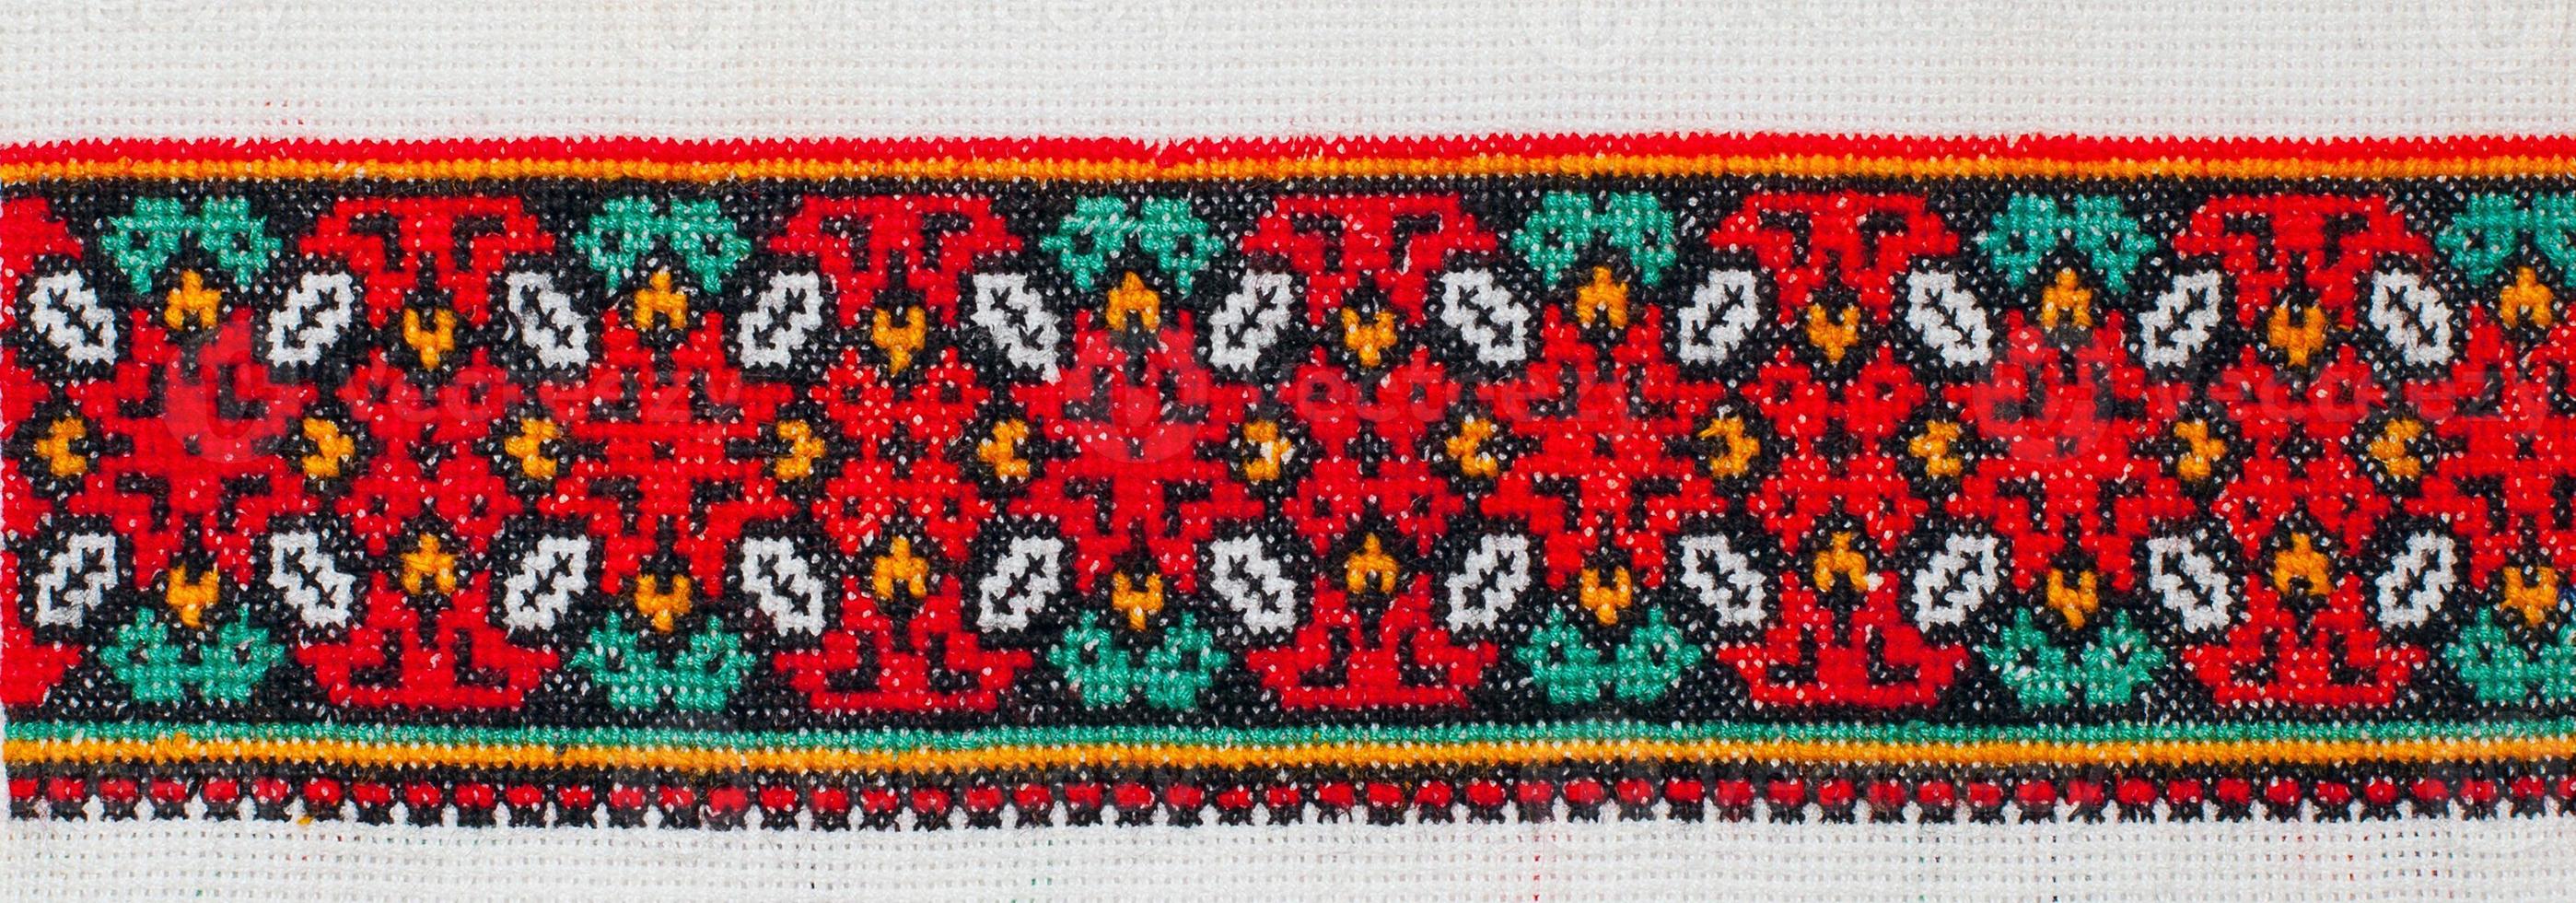 padrão de ponto de cruz bordado. ornamento étnico ucraniano foto